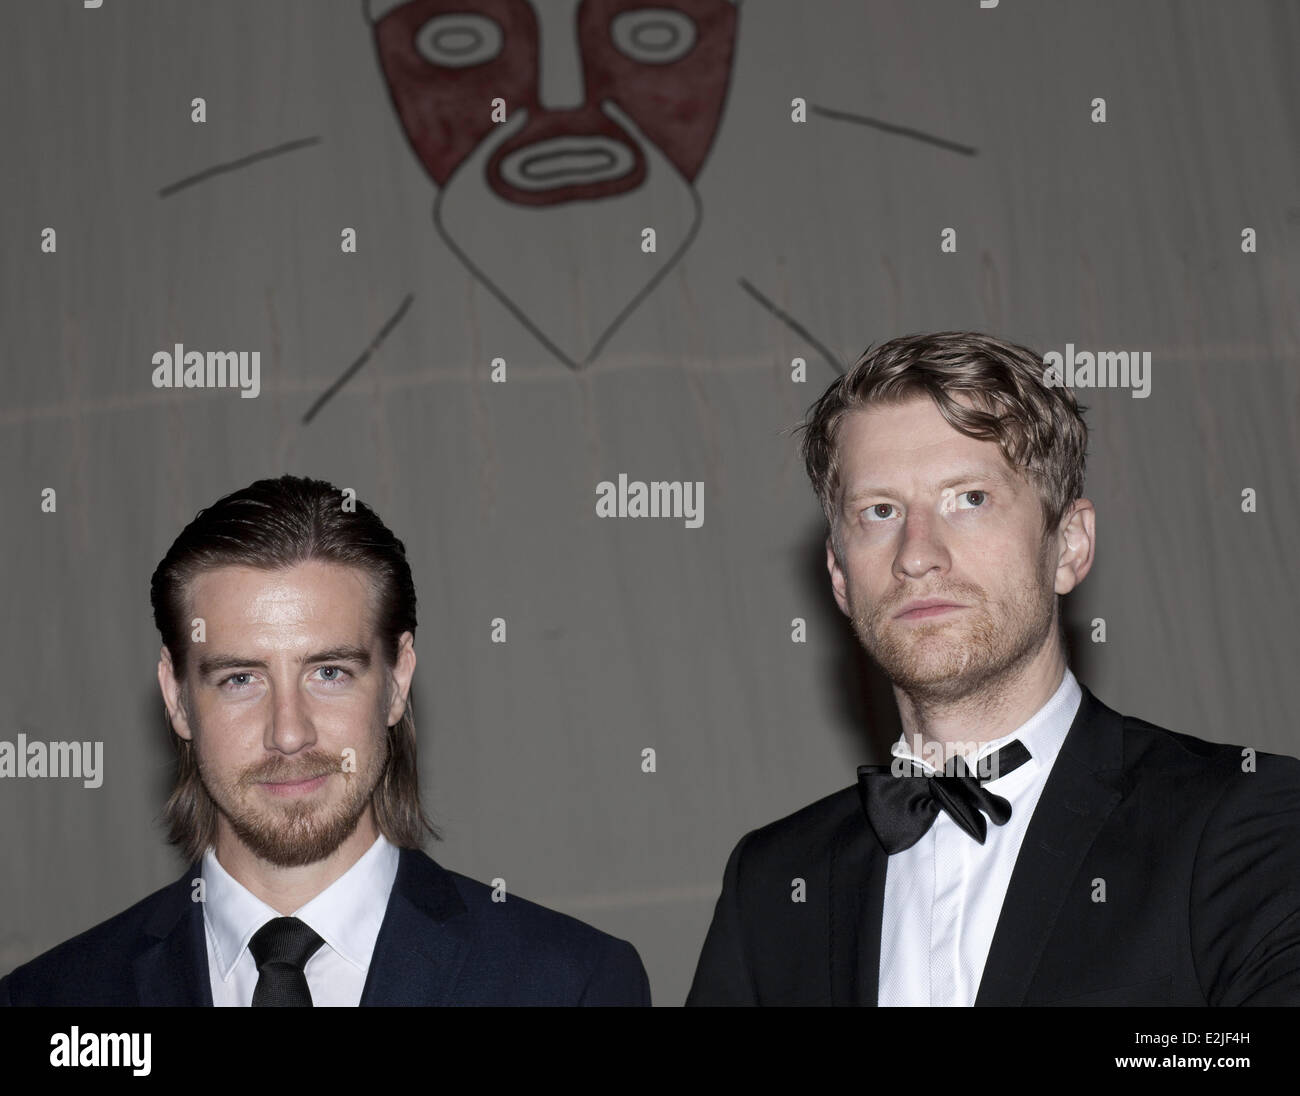 PAL Sverre Hagen und Odd-Magnus Williamson bei der Premiere von "Kon-Tiki" im Kino International Filmtheater.  Wo: Berlin, Deutschland bei: 6. März 2013 Stockfoto